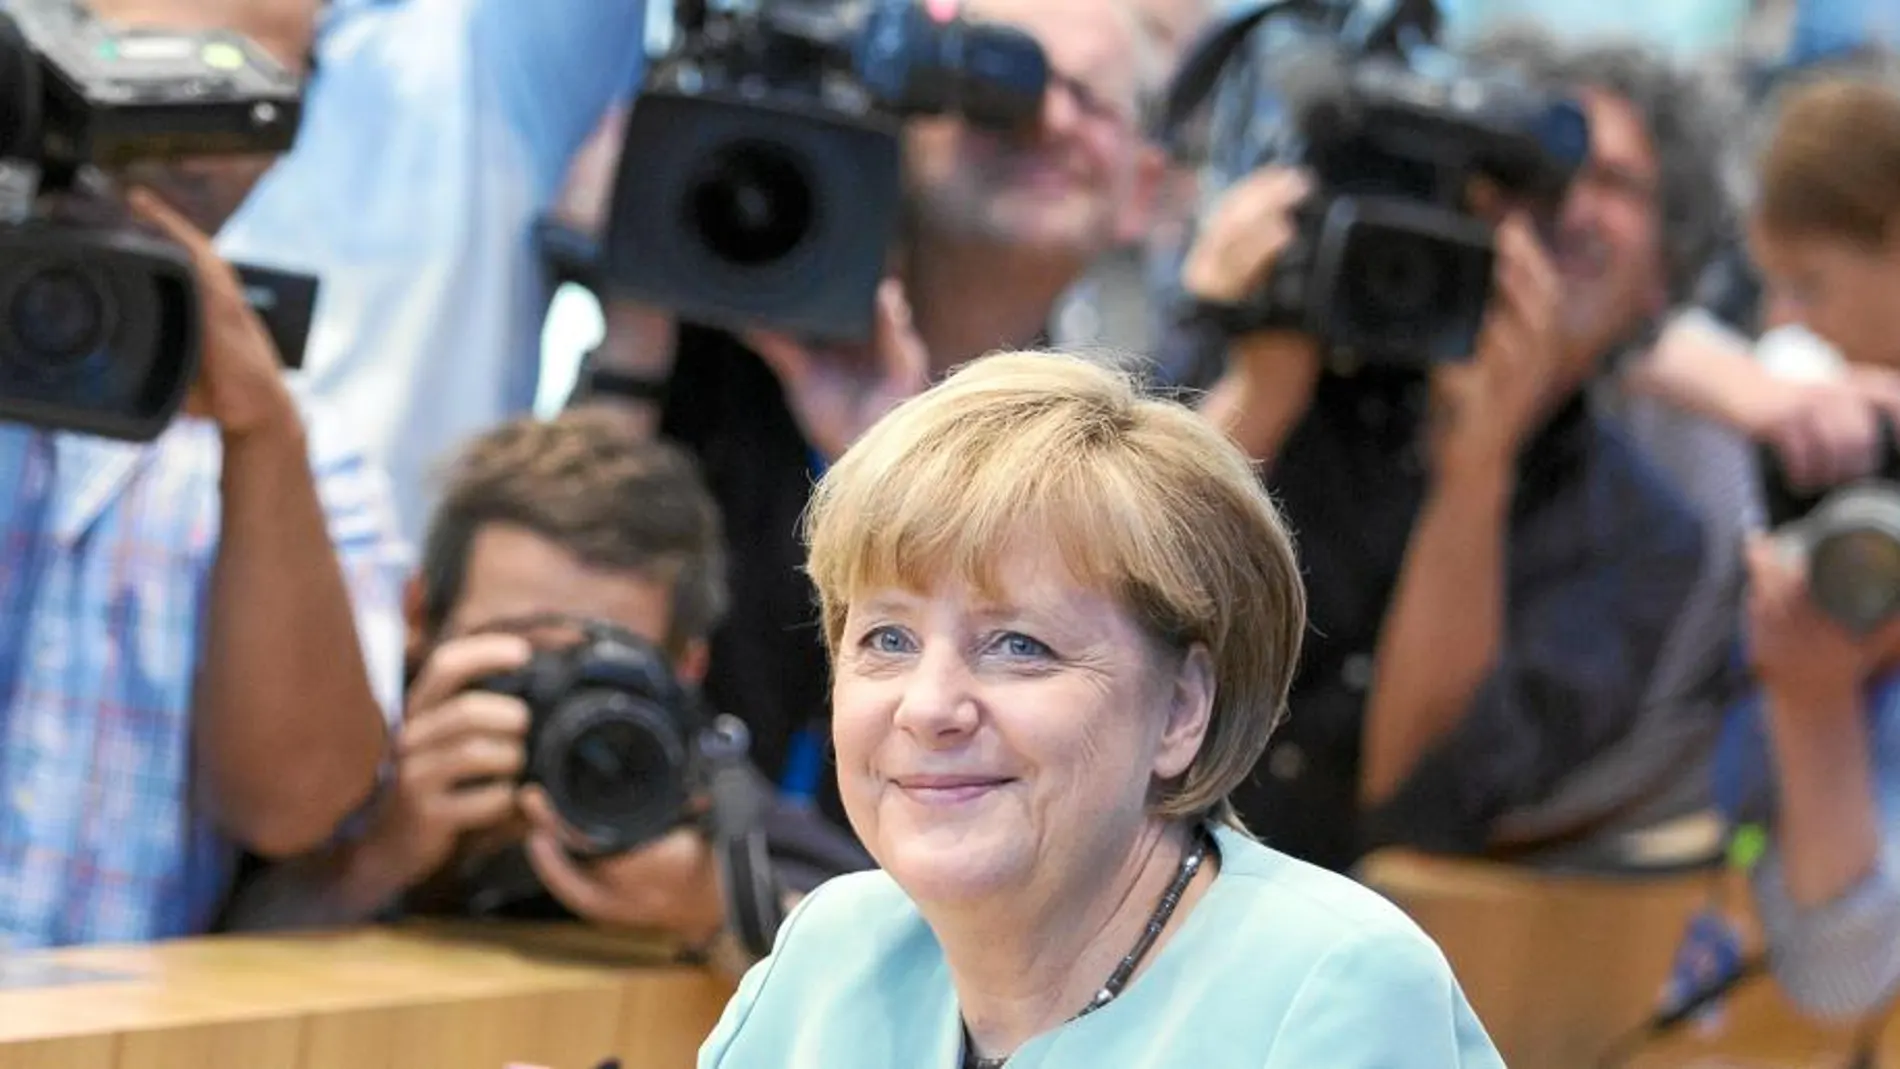 La canciller Merkel durante la rueda de prensa, ayer en Berlín